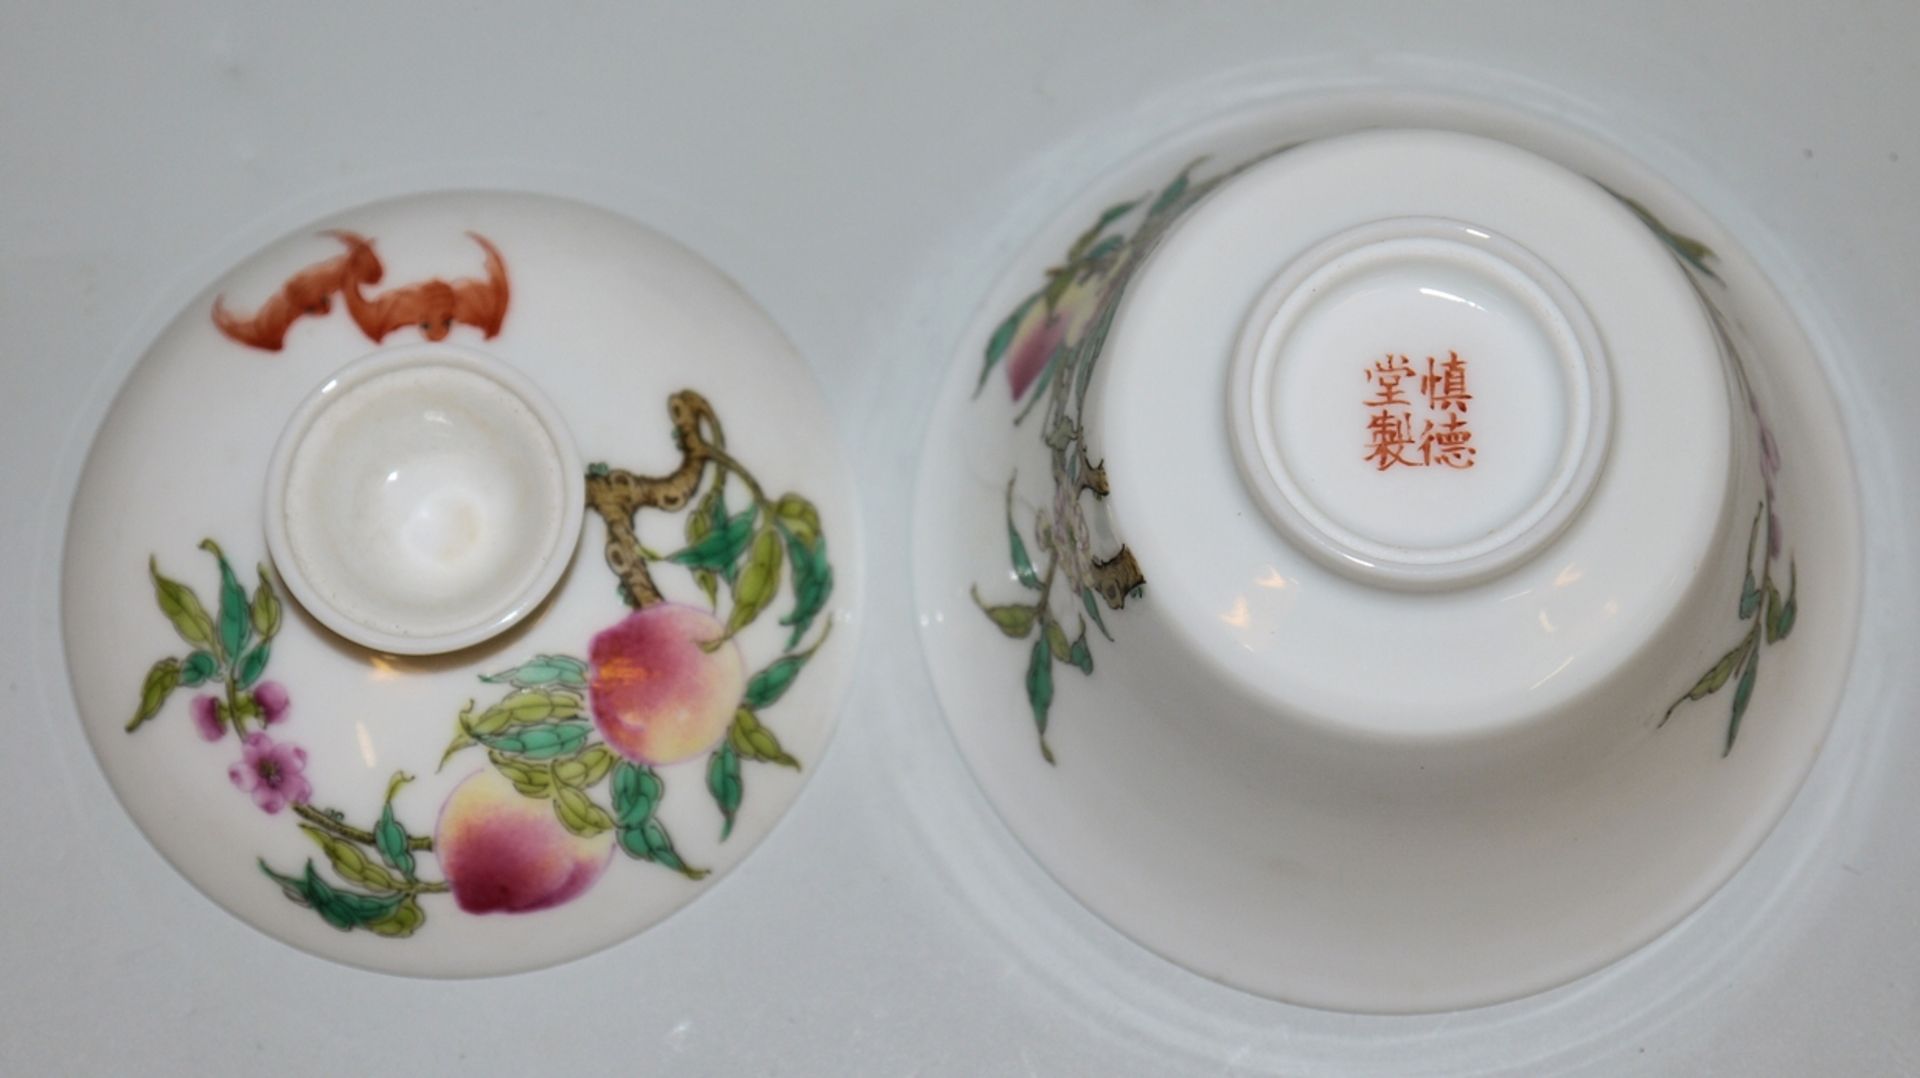 Teeschale mit Shen de Tang Marke, wohl Qing-Zeit, China 19. Jh. - Bild 2 aus 2